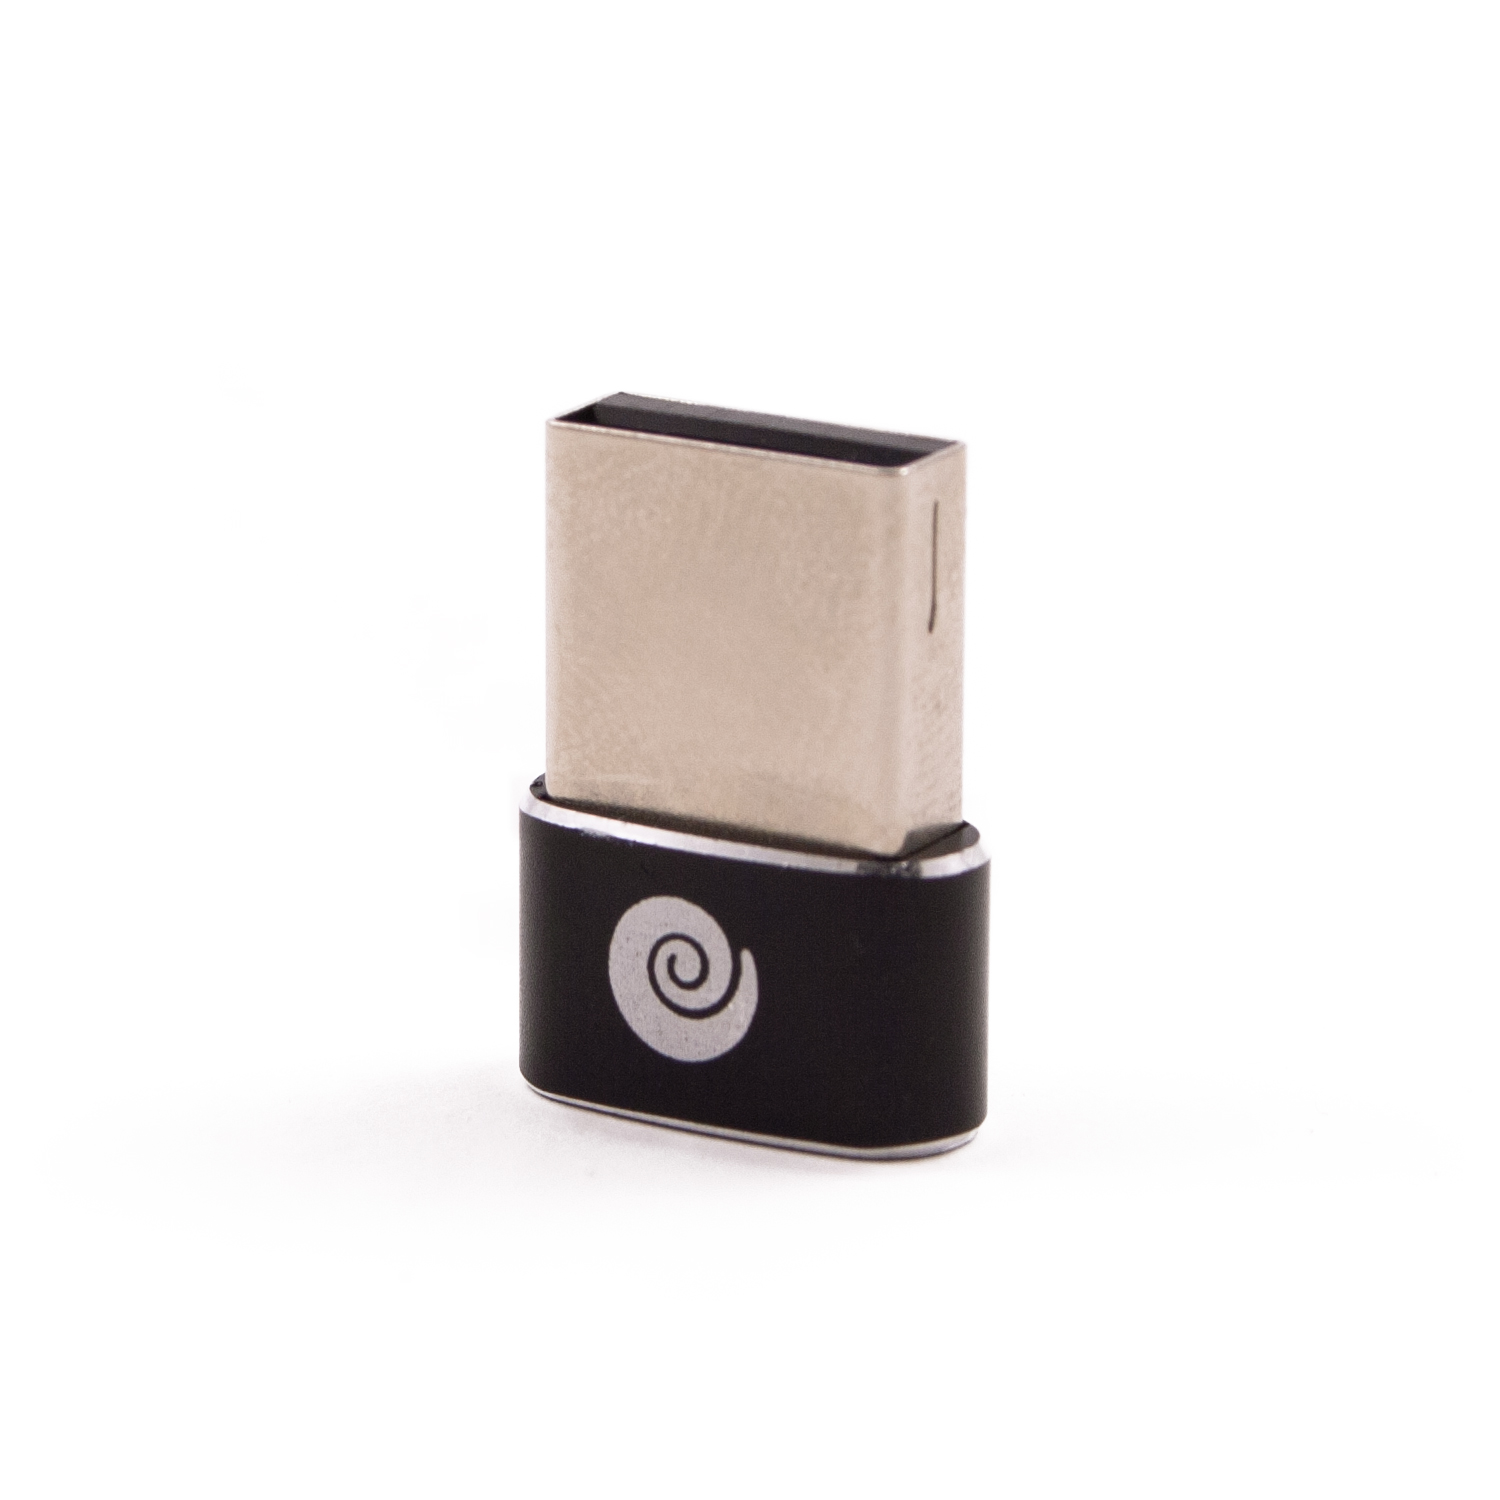 Coolbox - Adaptador USB-C a USB-A, Metálico, Diseño ultraportátil, Plug & Play